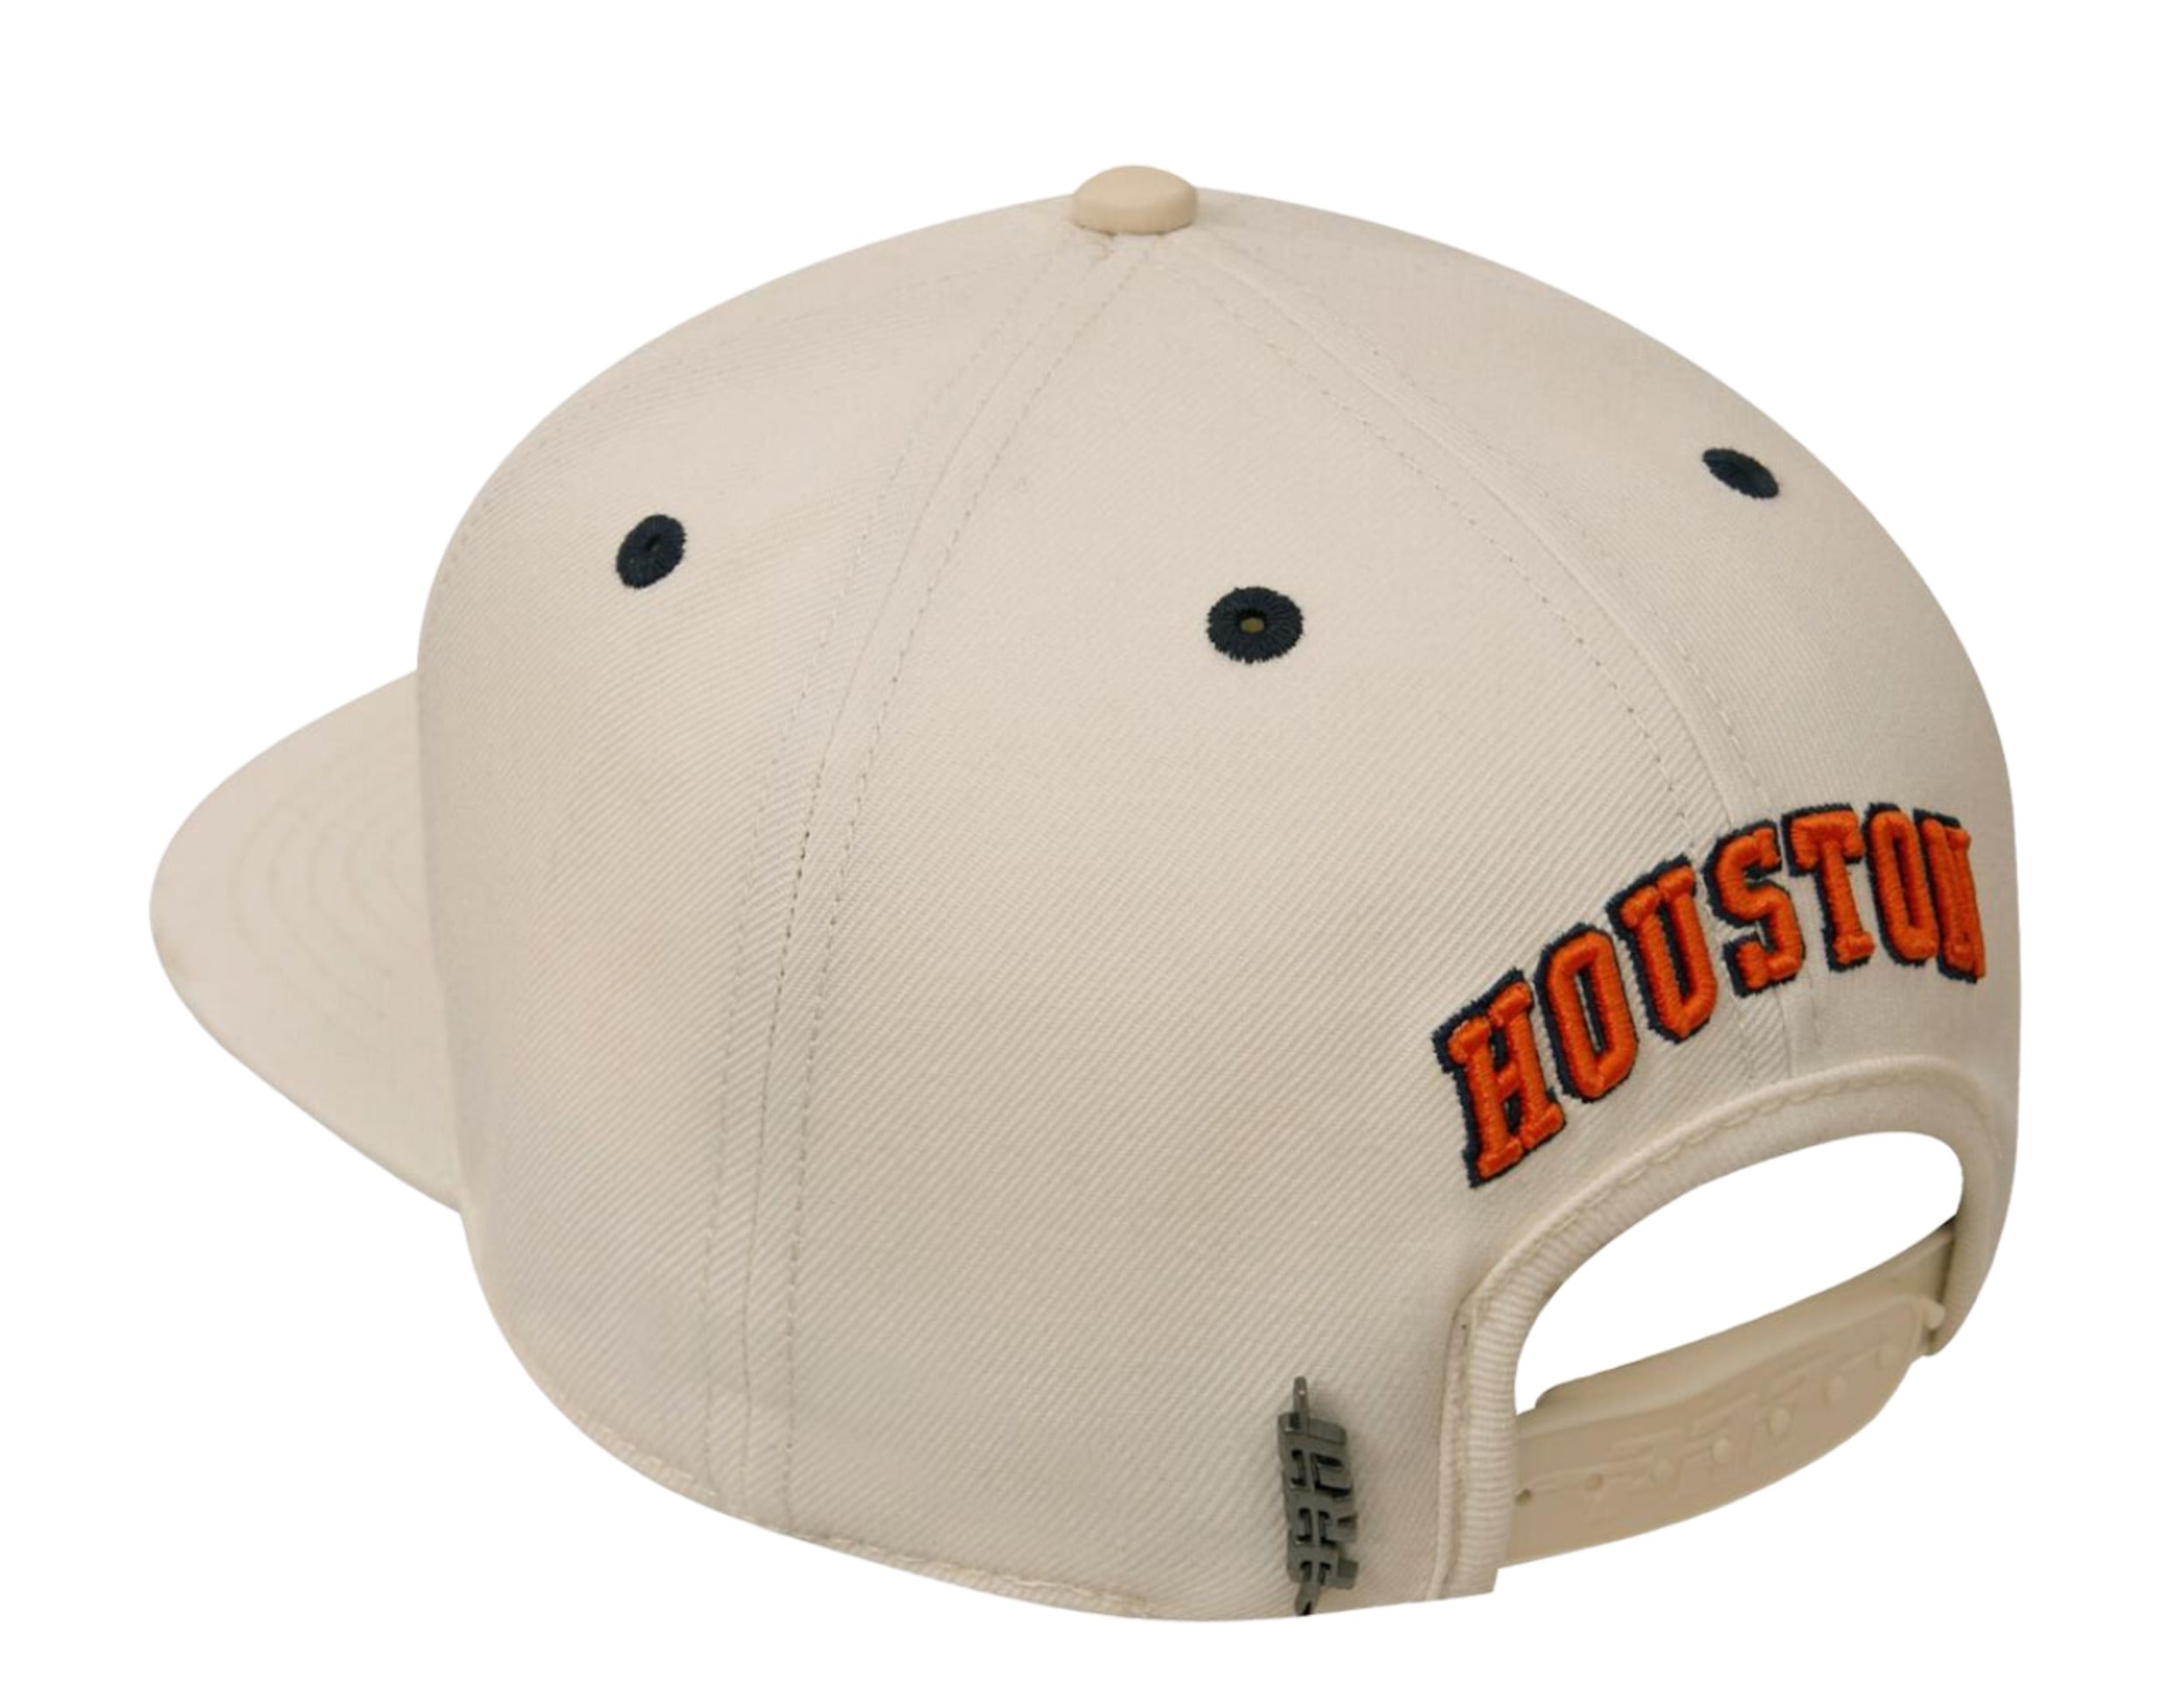 Toronto Maple Leafs Retro Brand Beige Worn Vintage Flexfit Hat Cap